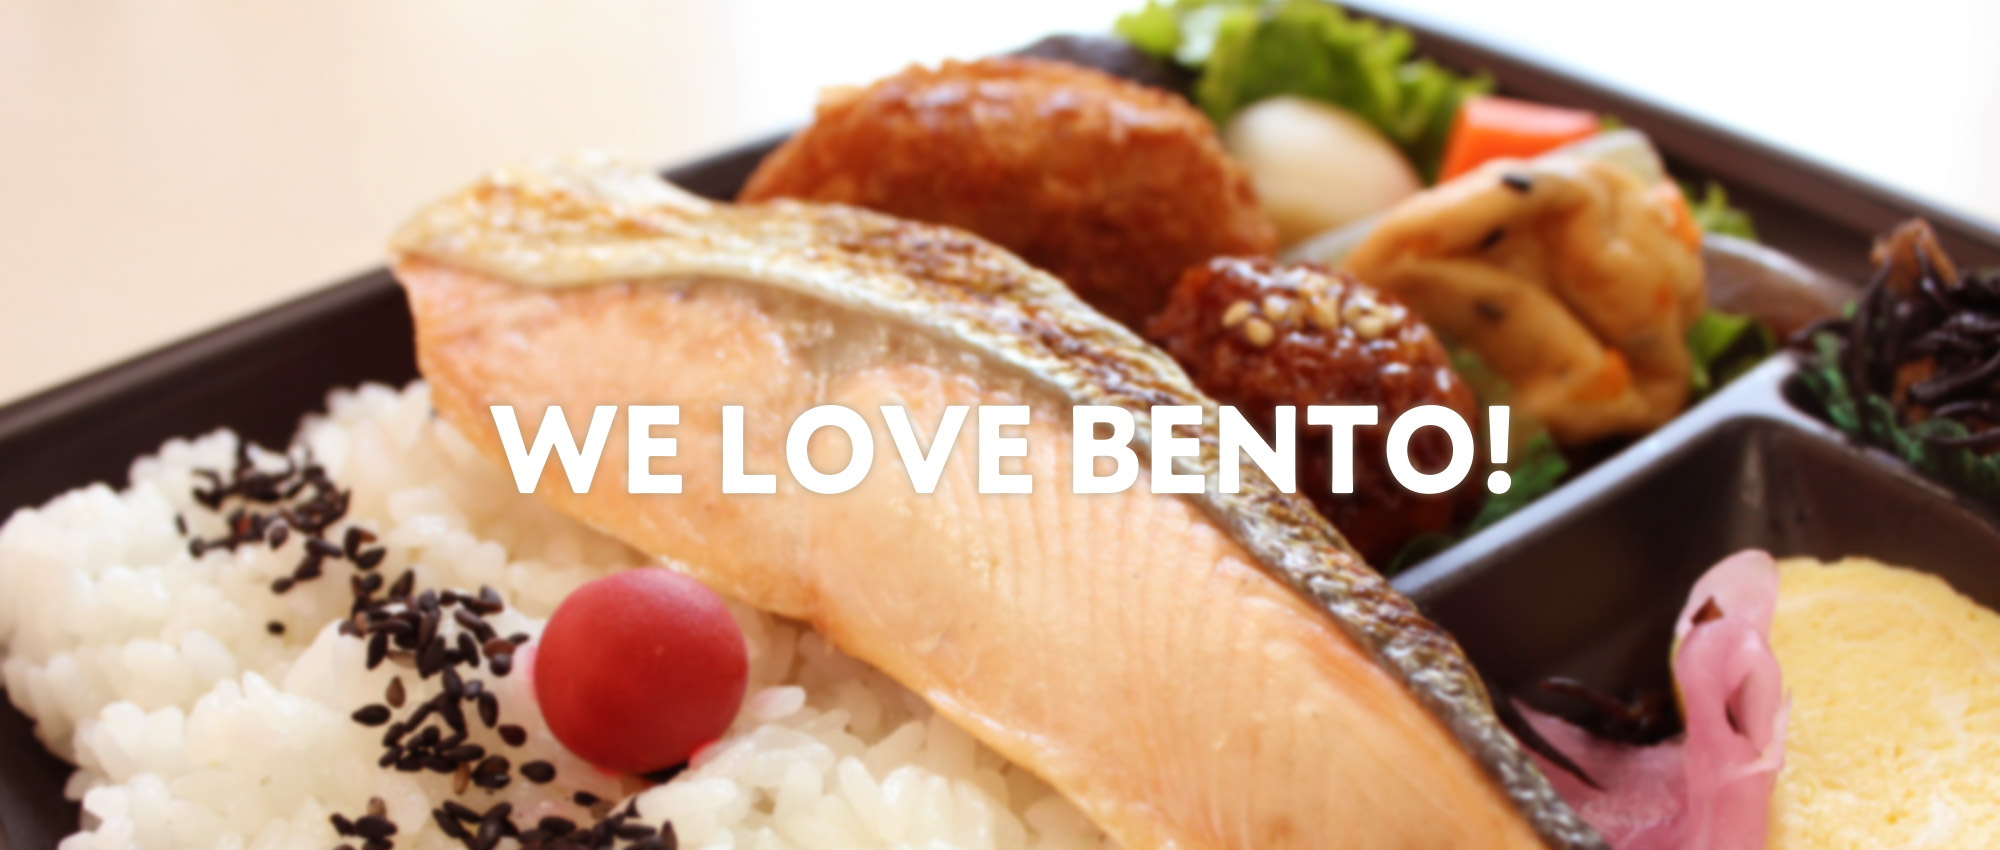 WE LOVE BENTO!